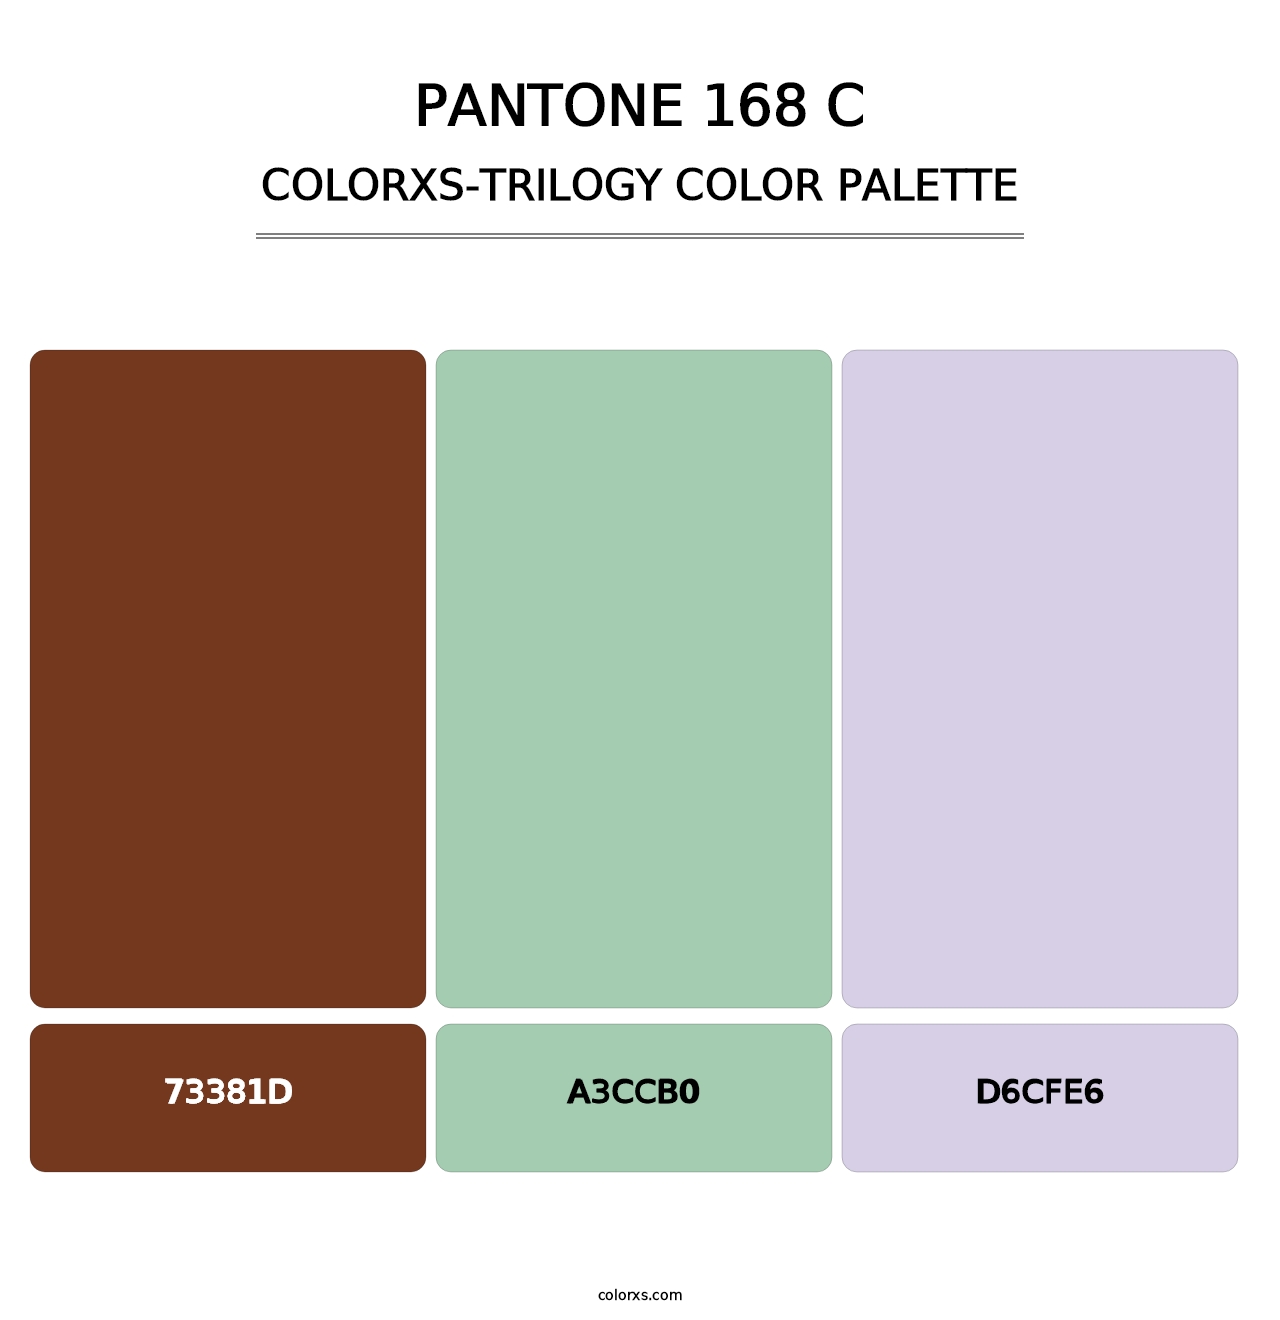 PANTONE 168 C - Colorxs Trilogy Palette